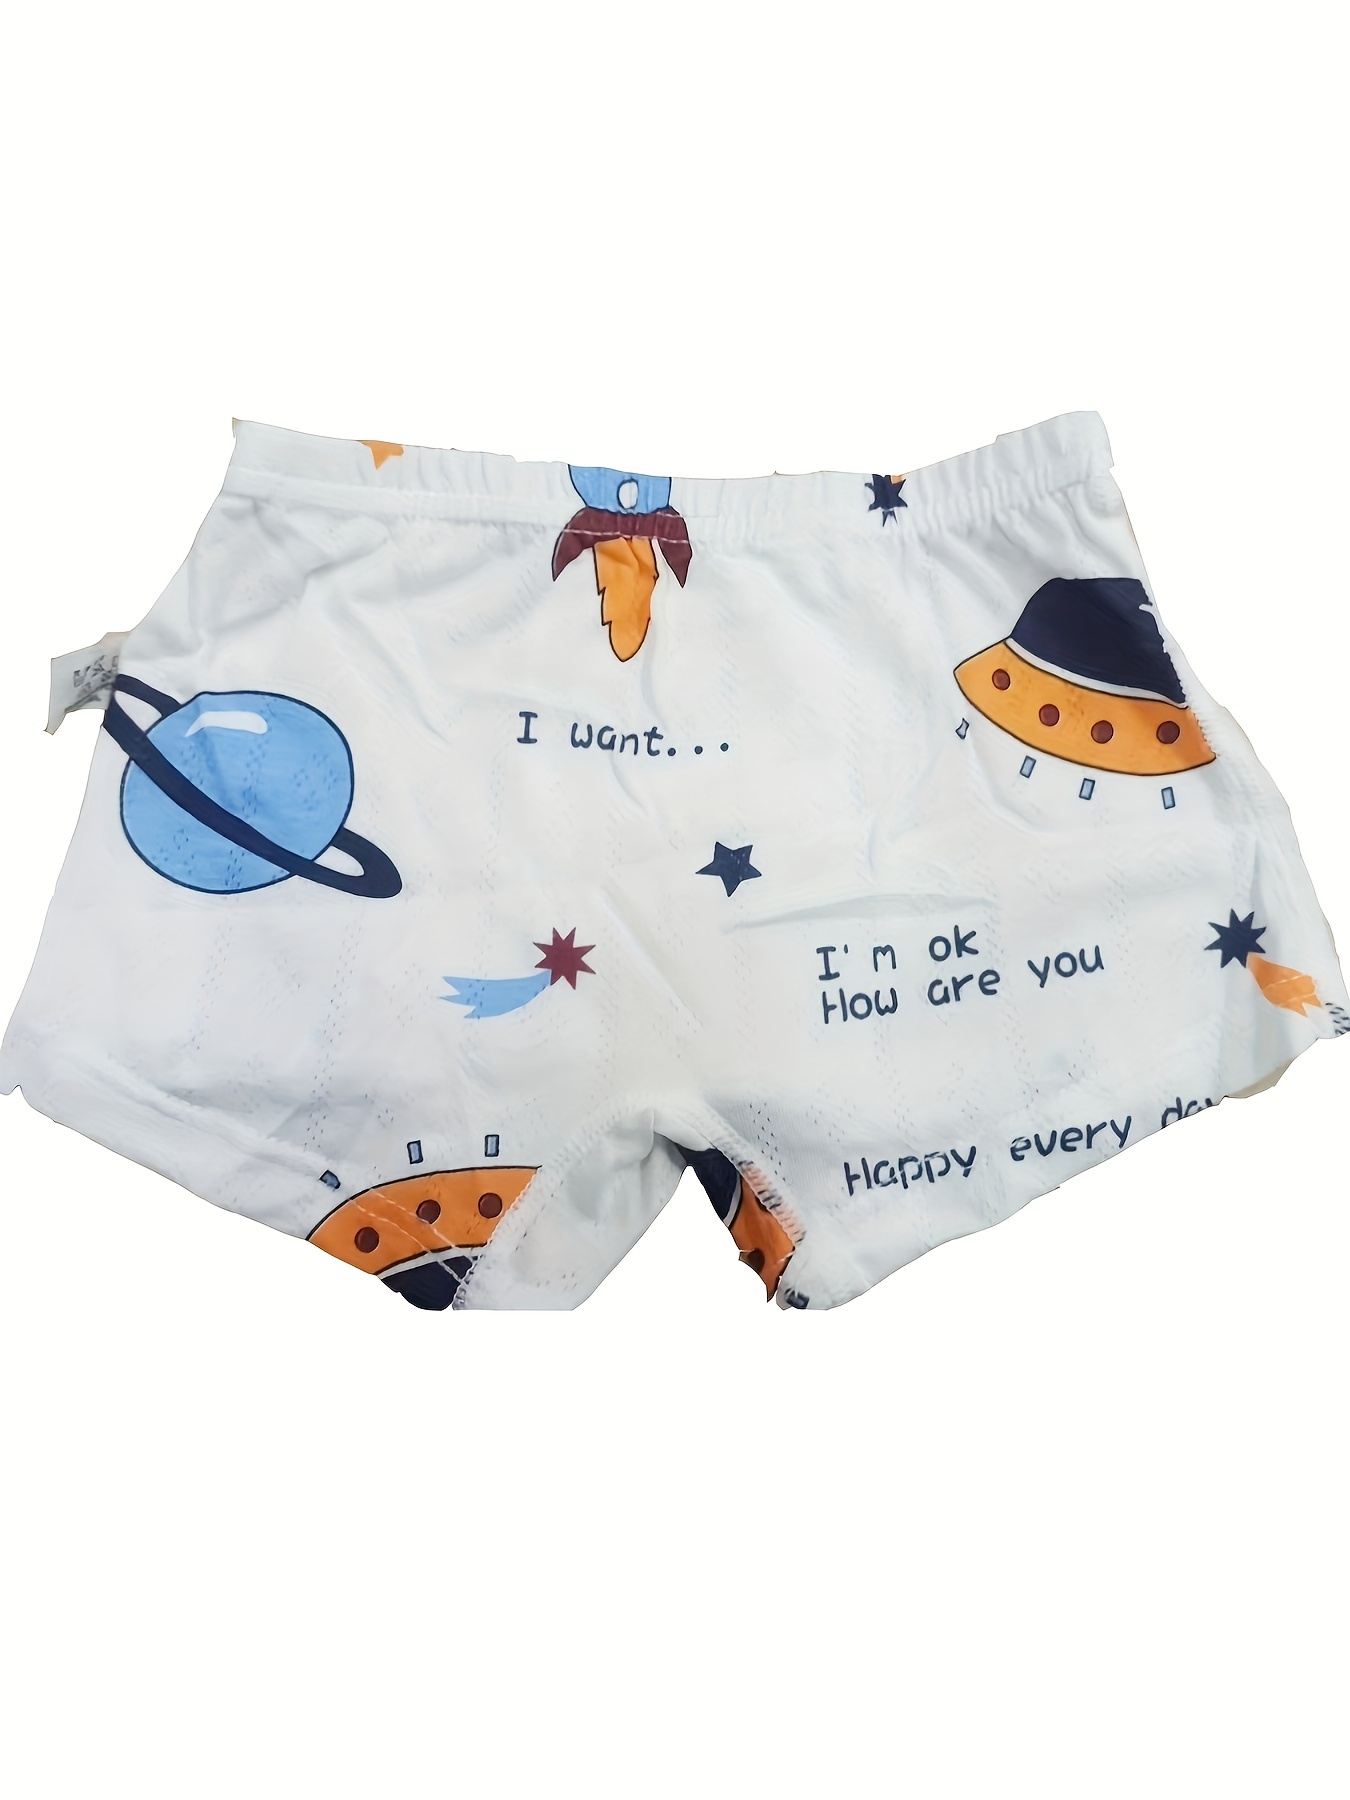 4pcs/pack Baby Underwear for Boys Cotton Children Cartoon Dinosaur